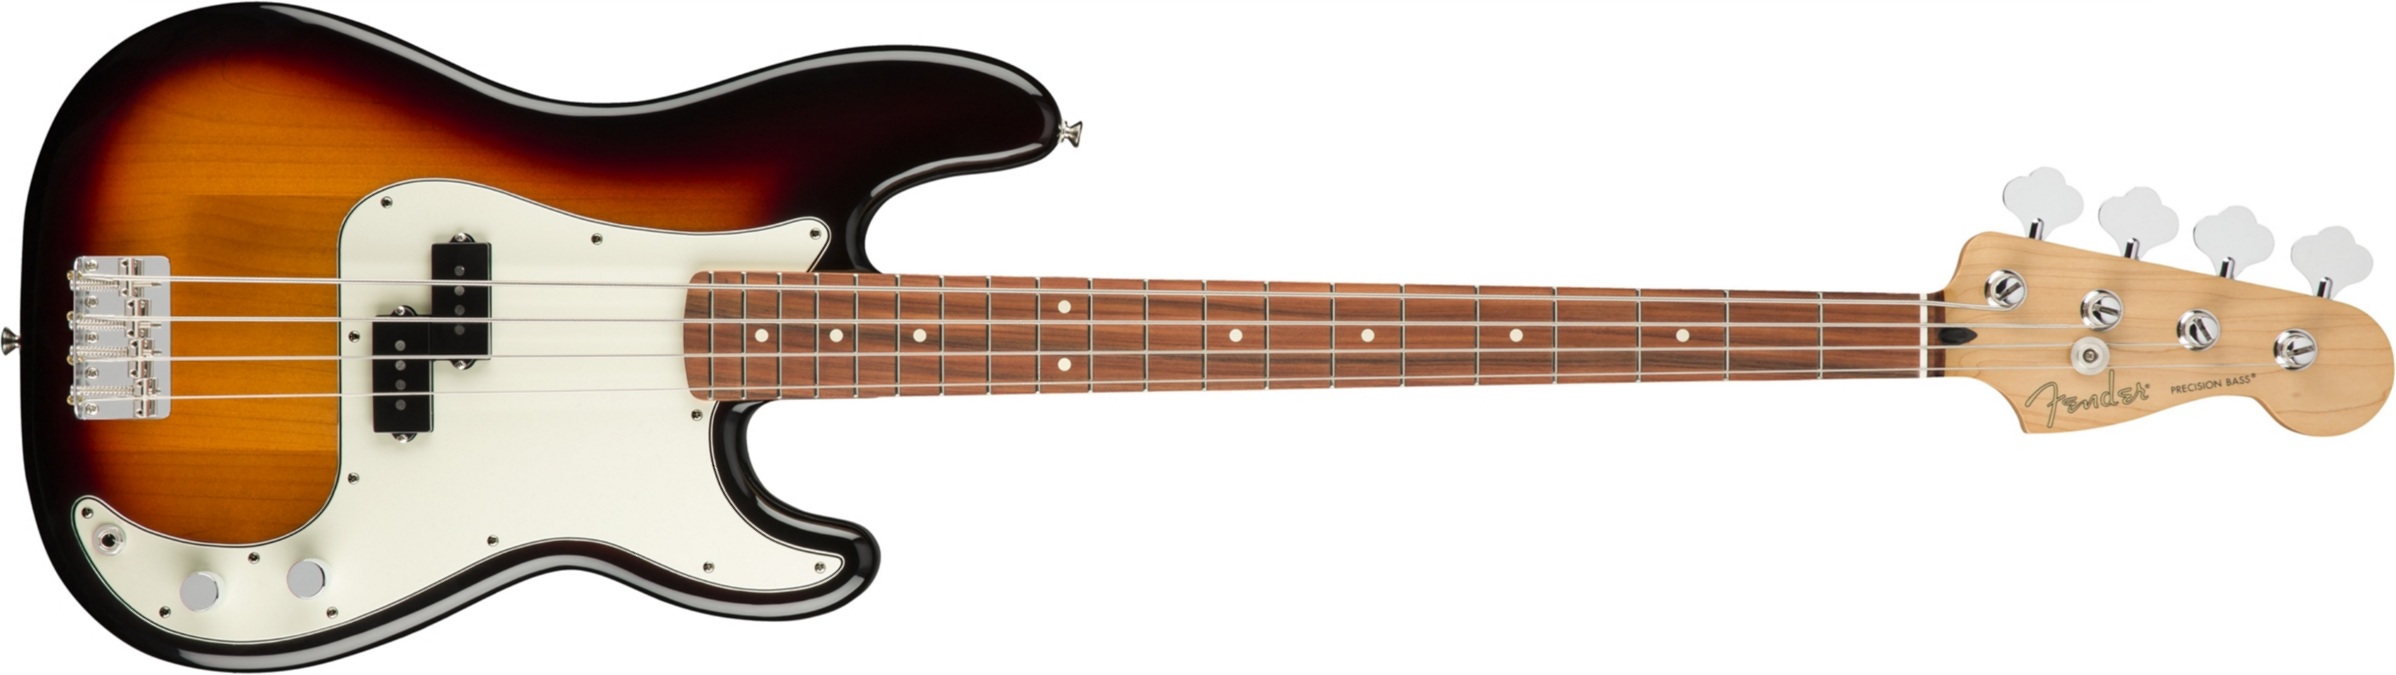 Fender Precision Bass Player Mex Pf - 3-color Sunburst - Solidbody E-bass - Main picture